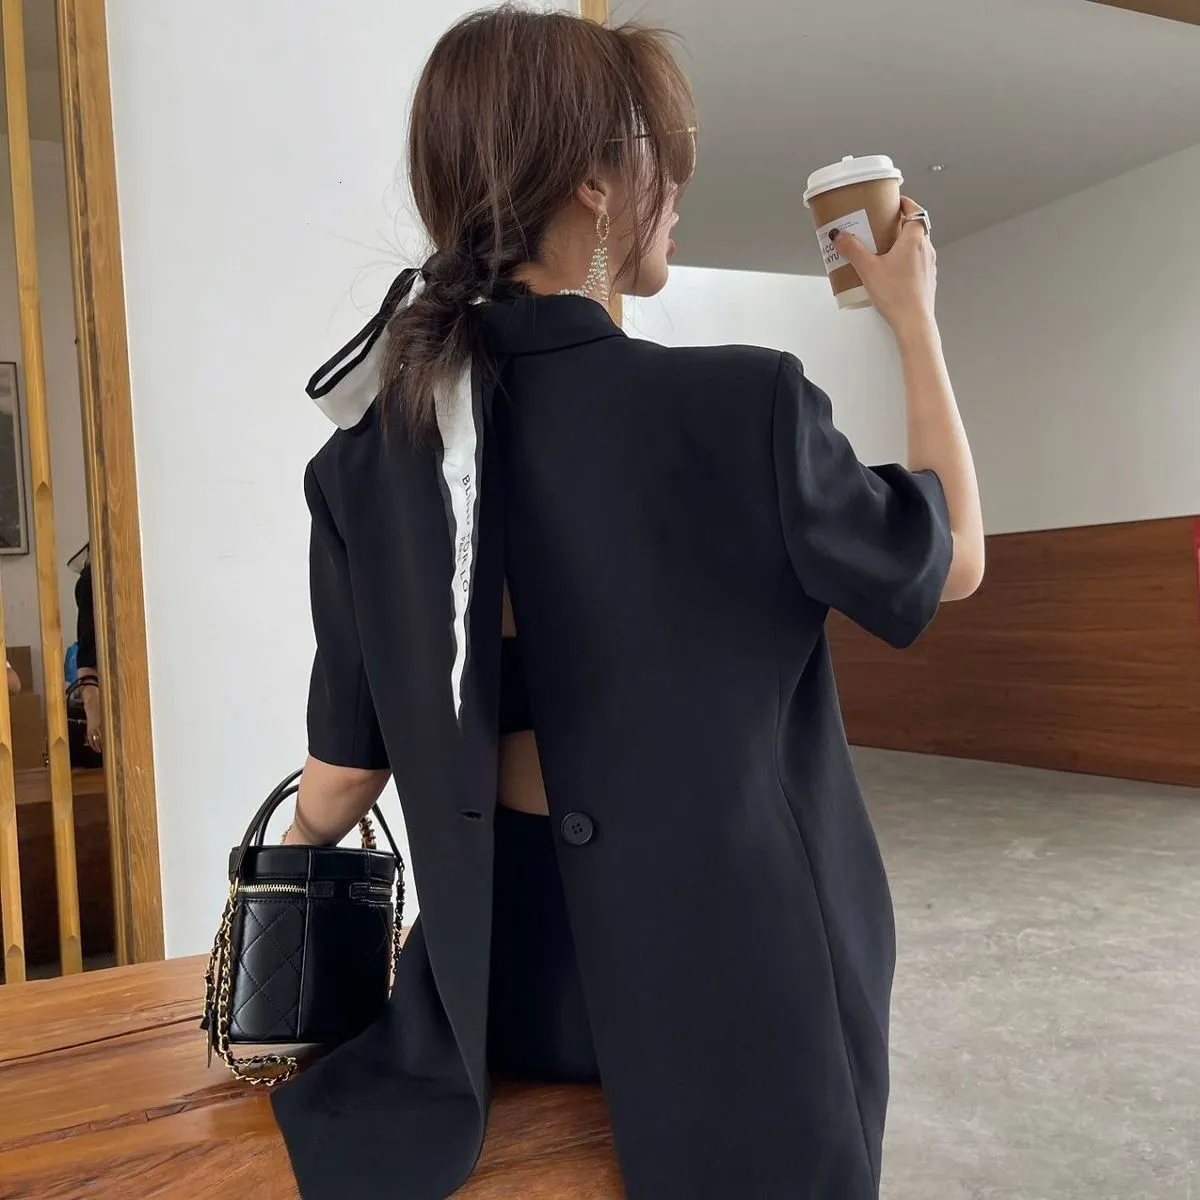 Women Steampunk Dressy Formal Tuxedo Retro Vest Suit Waistcoat Jacket  Backless | eBay